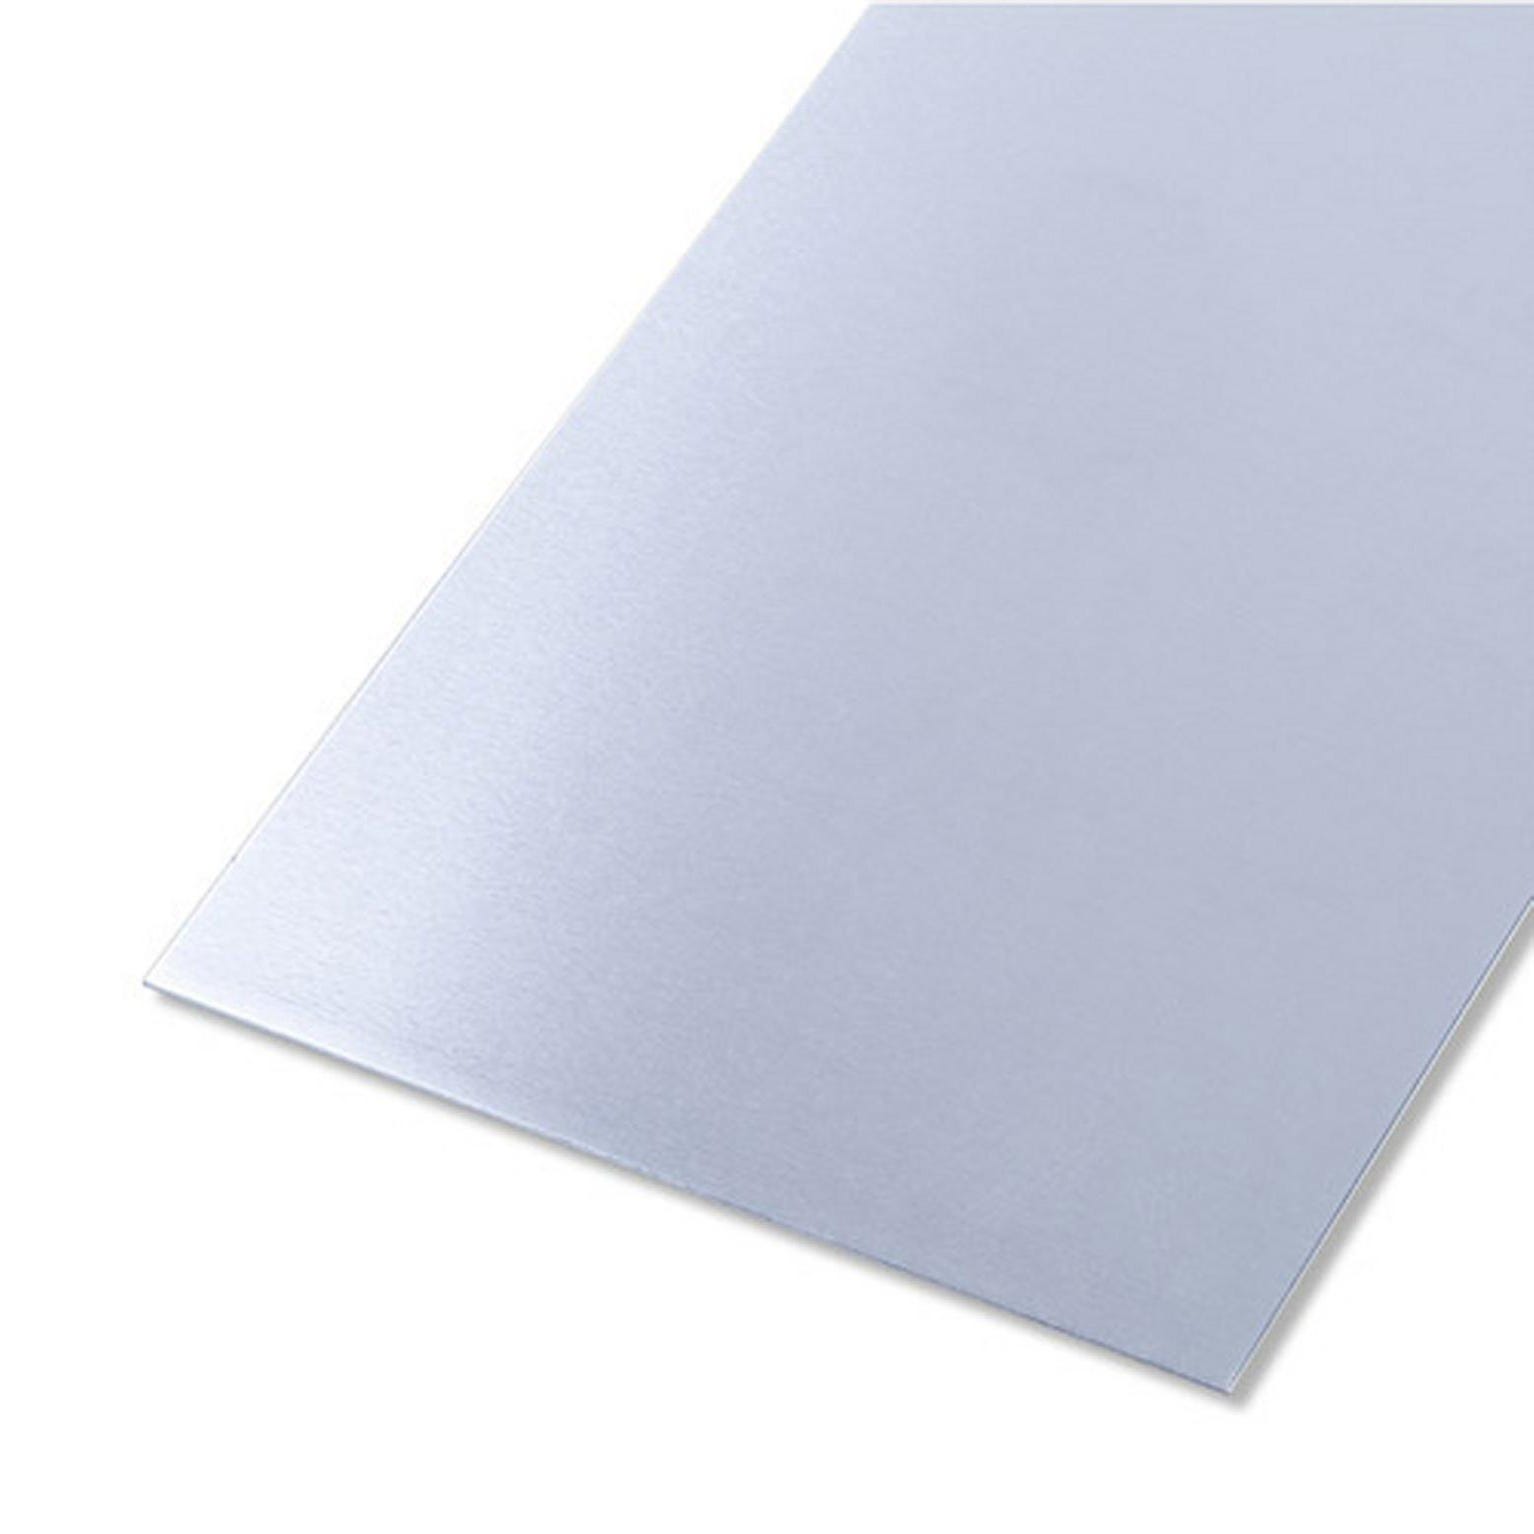 Tôle inox lisse brut gris L.1000 x l.600 mm, Ep.0.5 mm